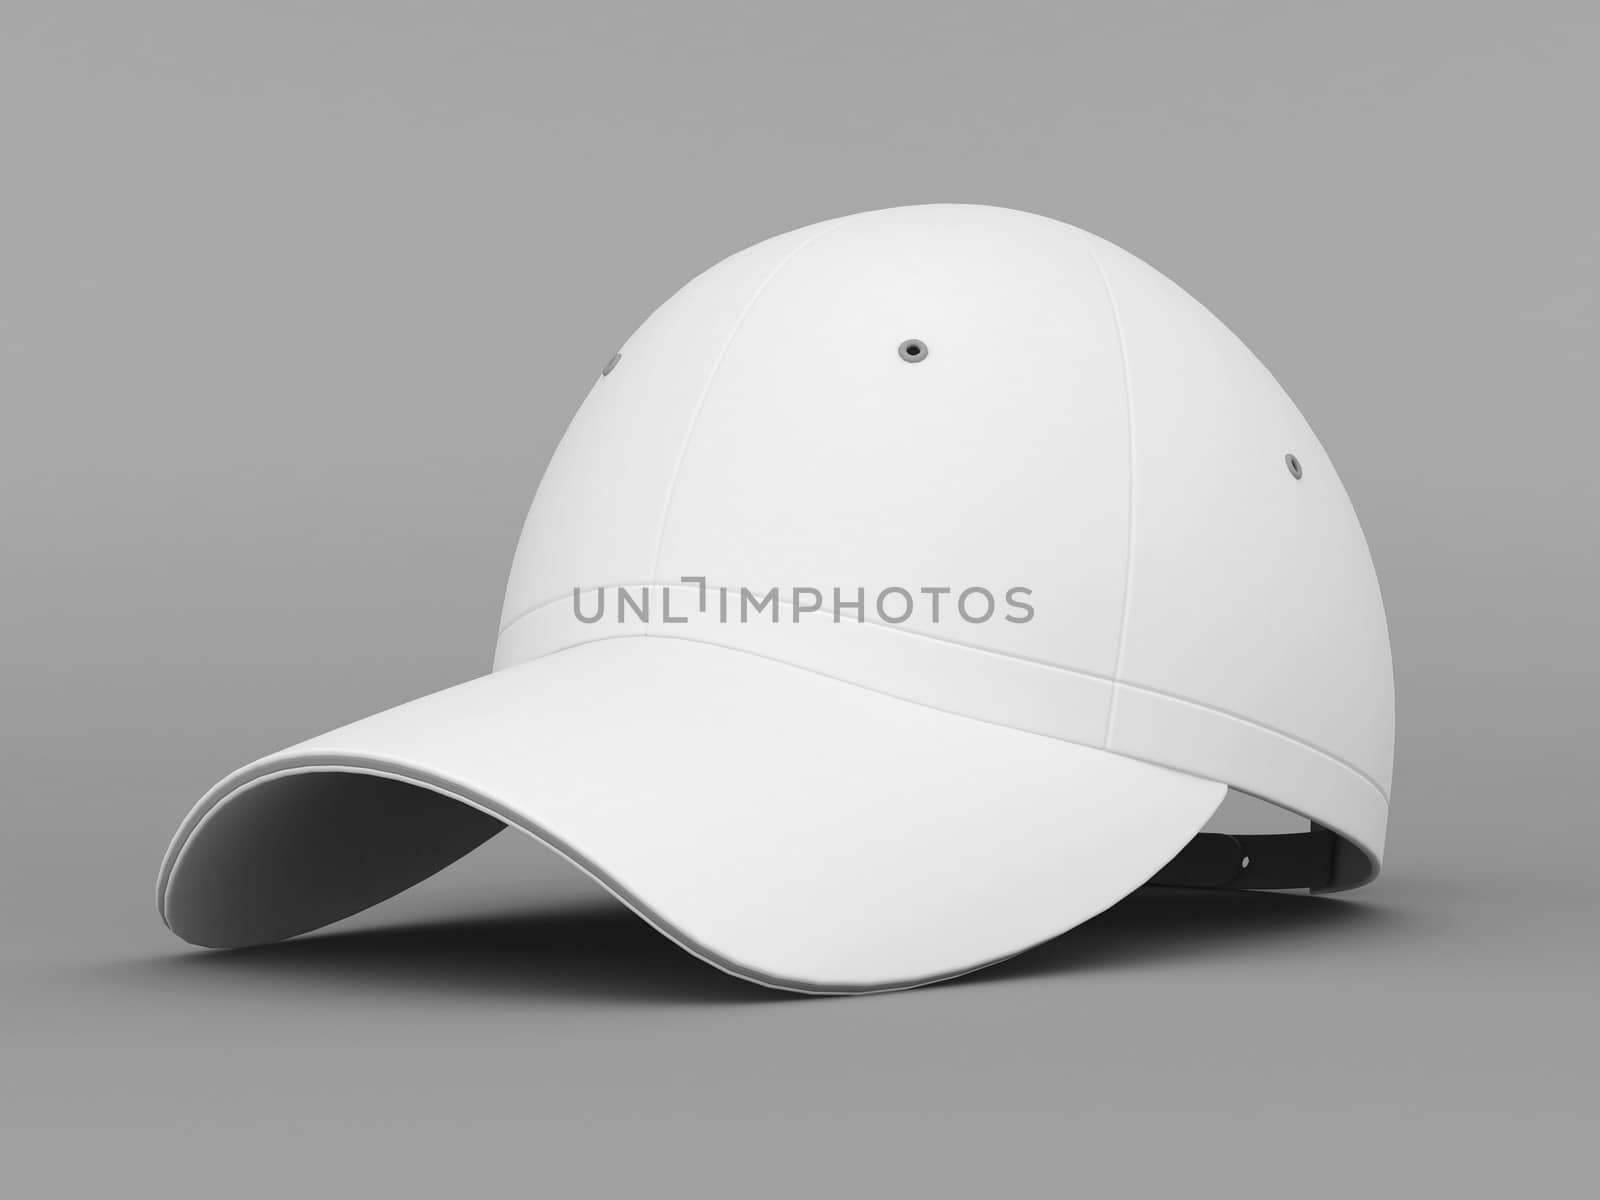 White baseball cap on gray background